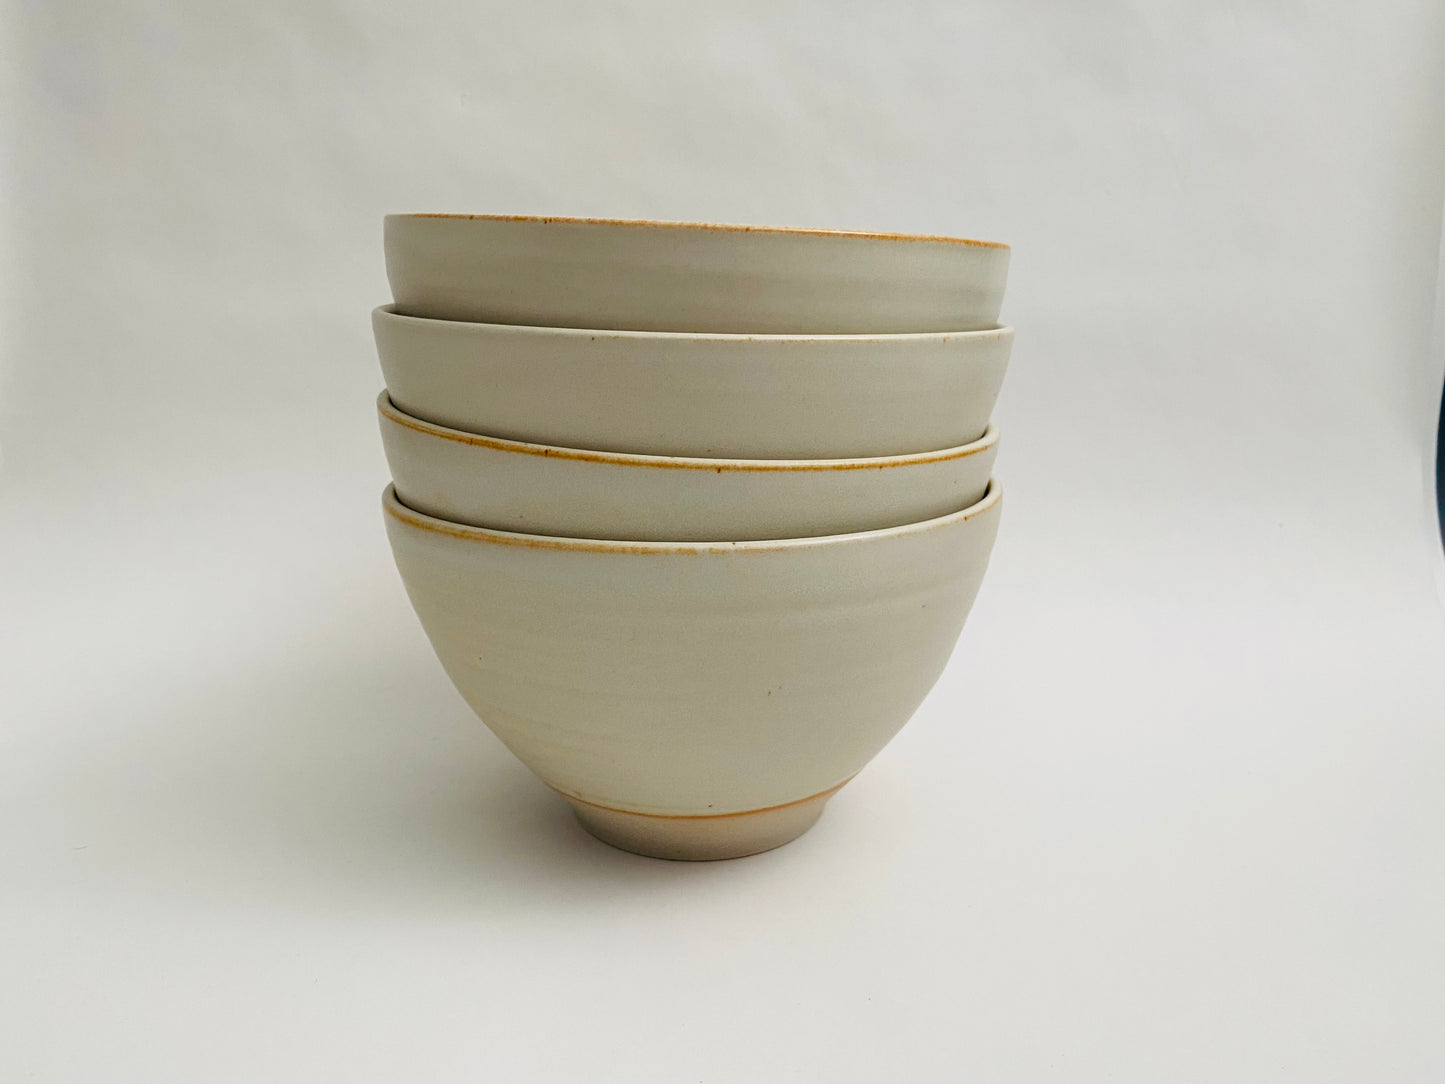 A set of 4 ramen bowls in a matte glaze.